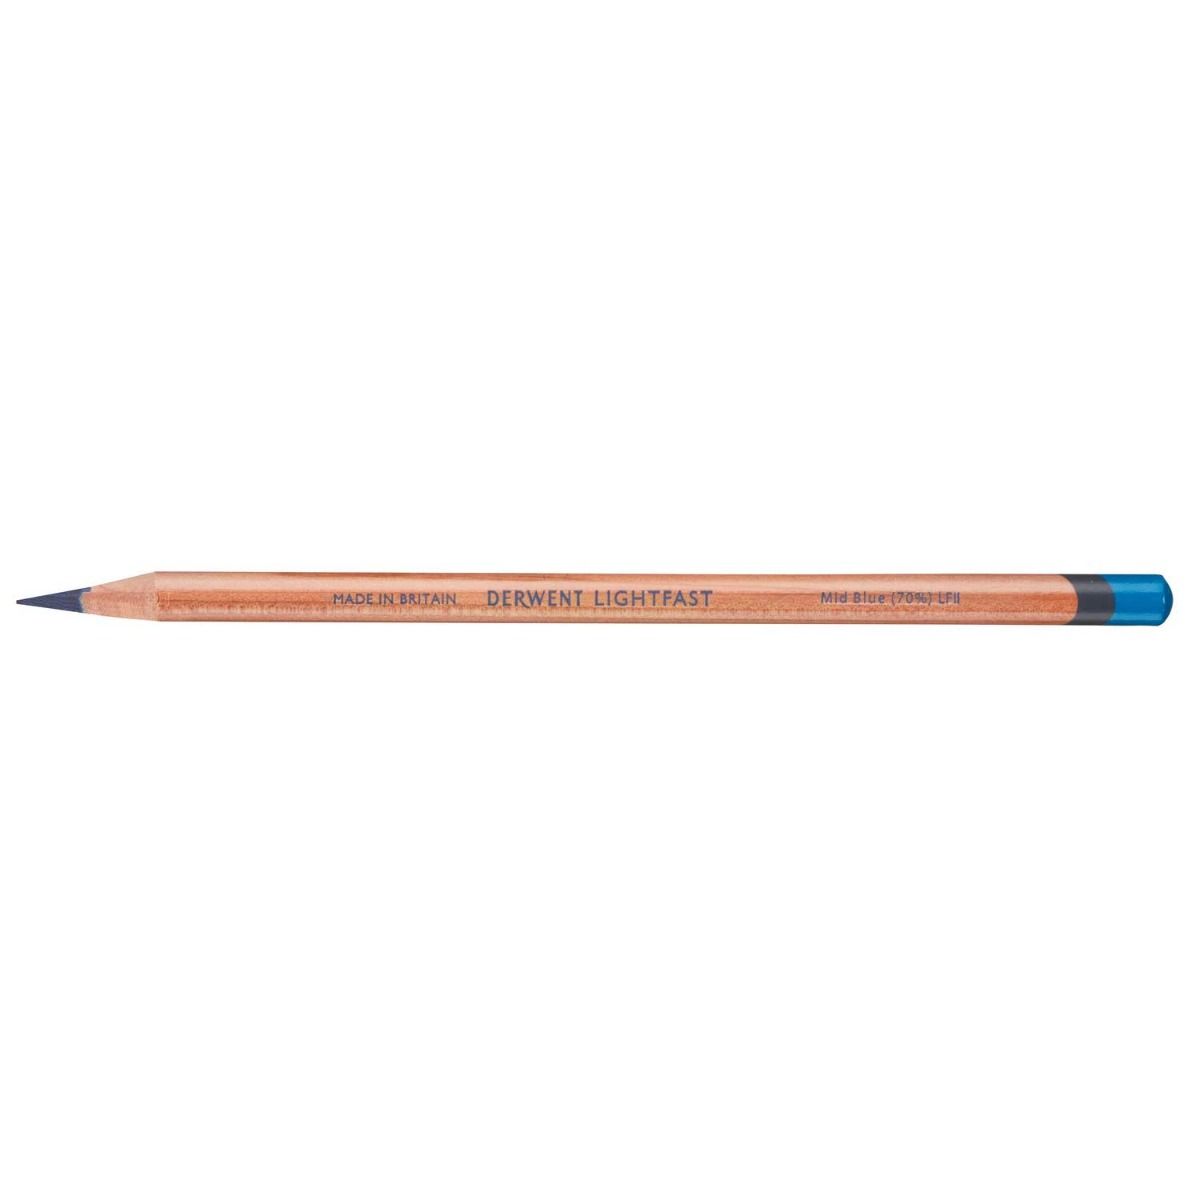 Derwent Lightfast Pencil Colour: Mid Blue (70%)